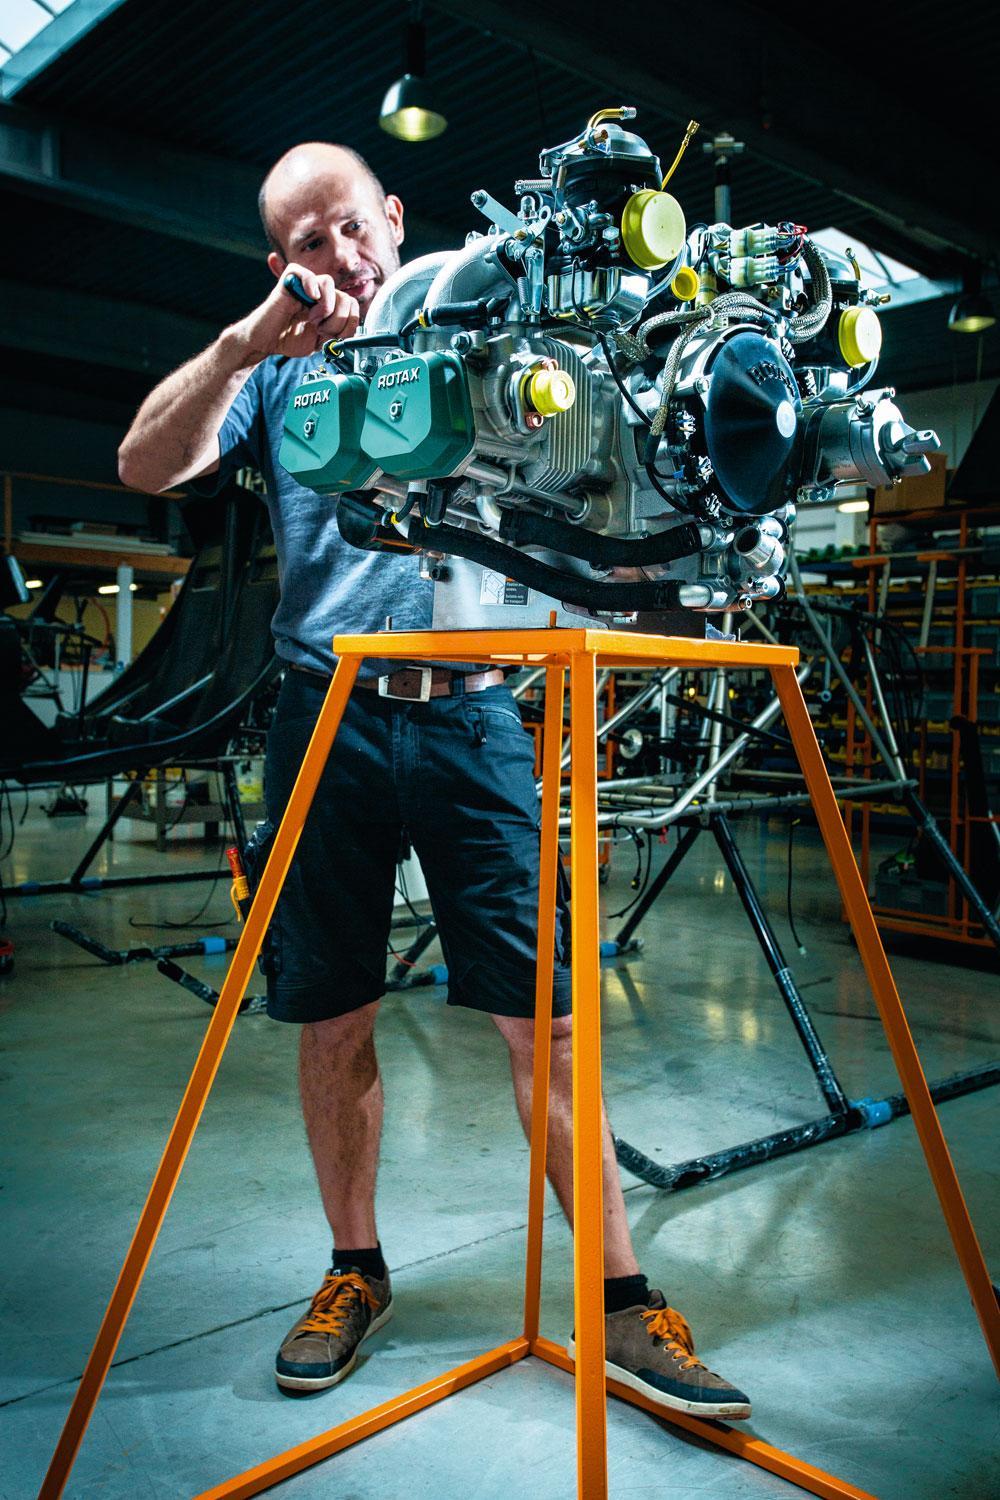 Motor De motor is een Rotax, het meest gangbare model in de luchtvaart. Al wordt er wel aan gesleuteld. 